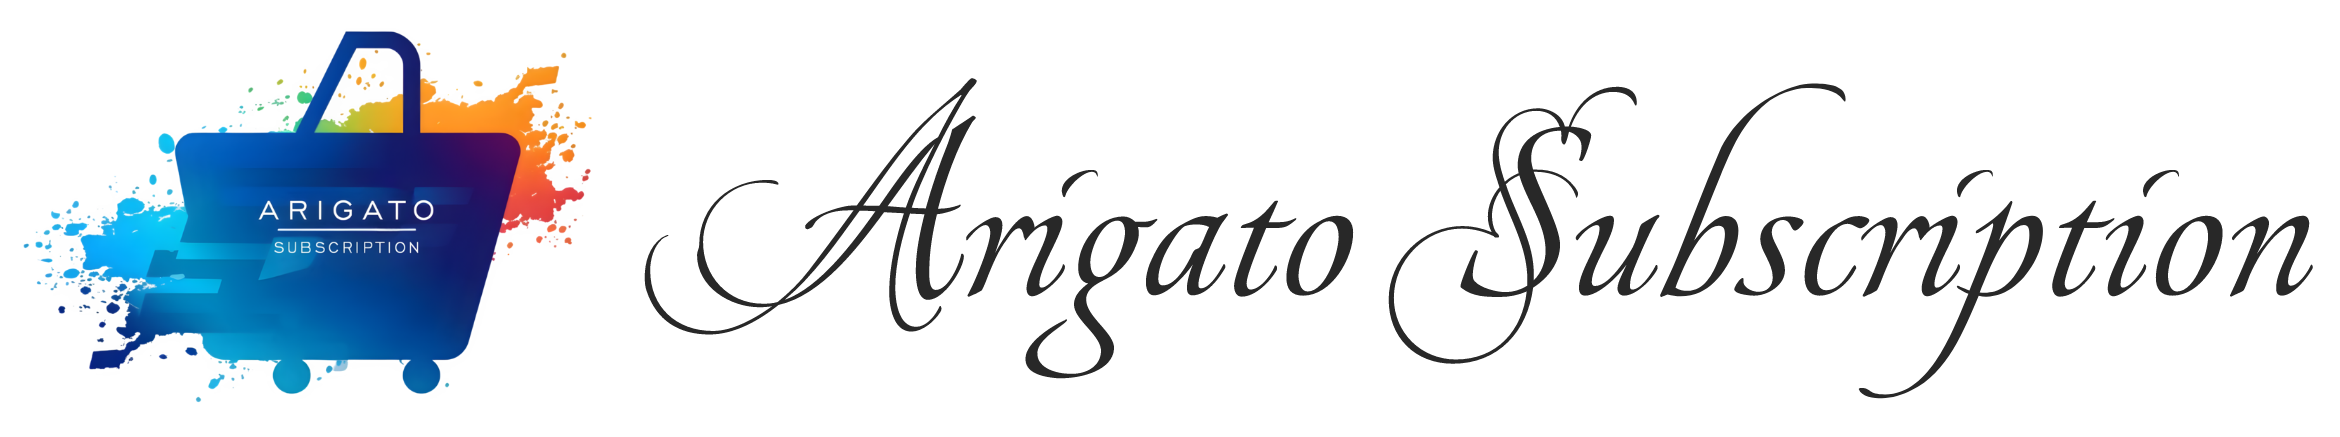 Arigato Subscription